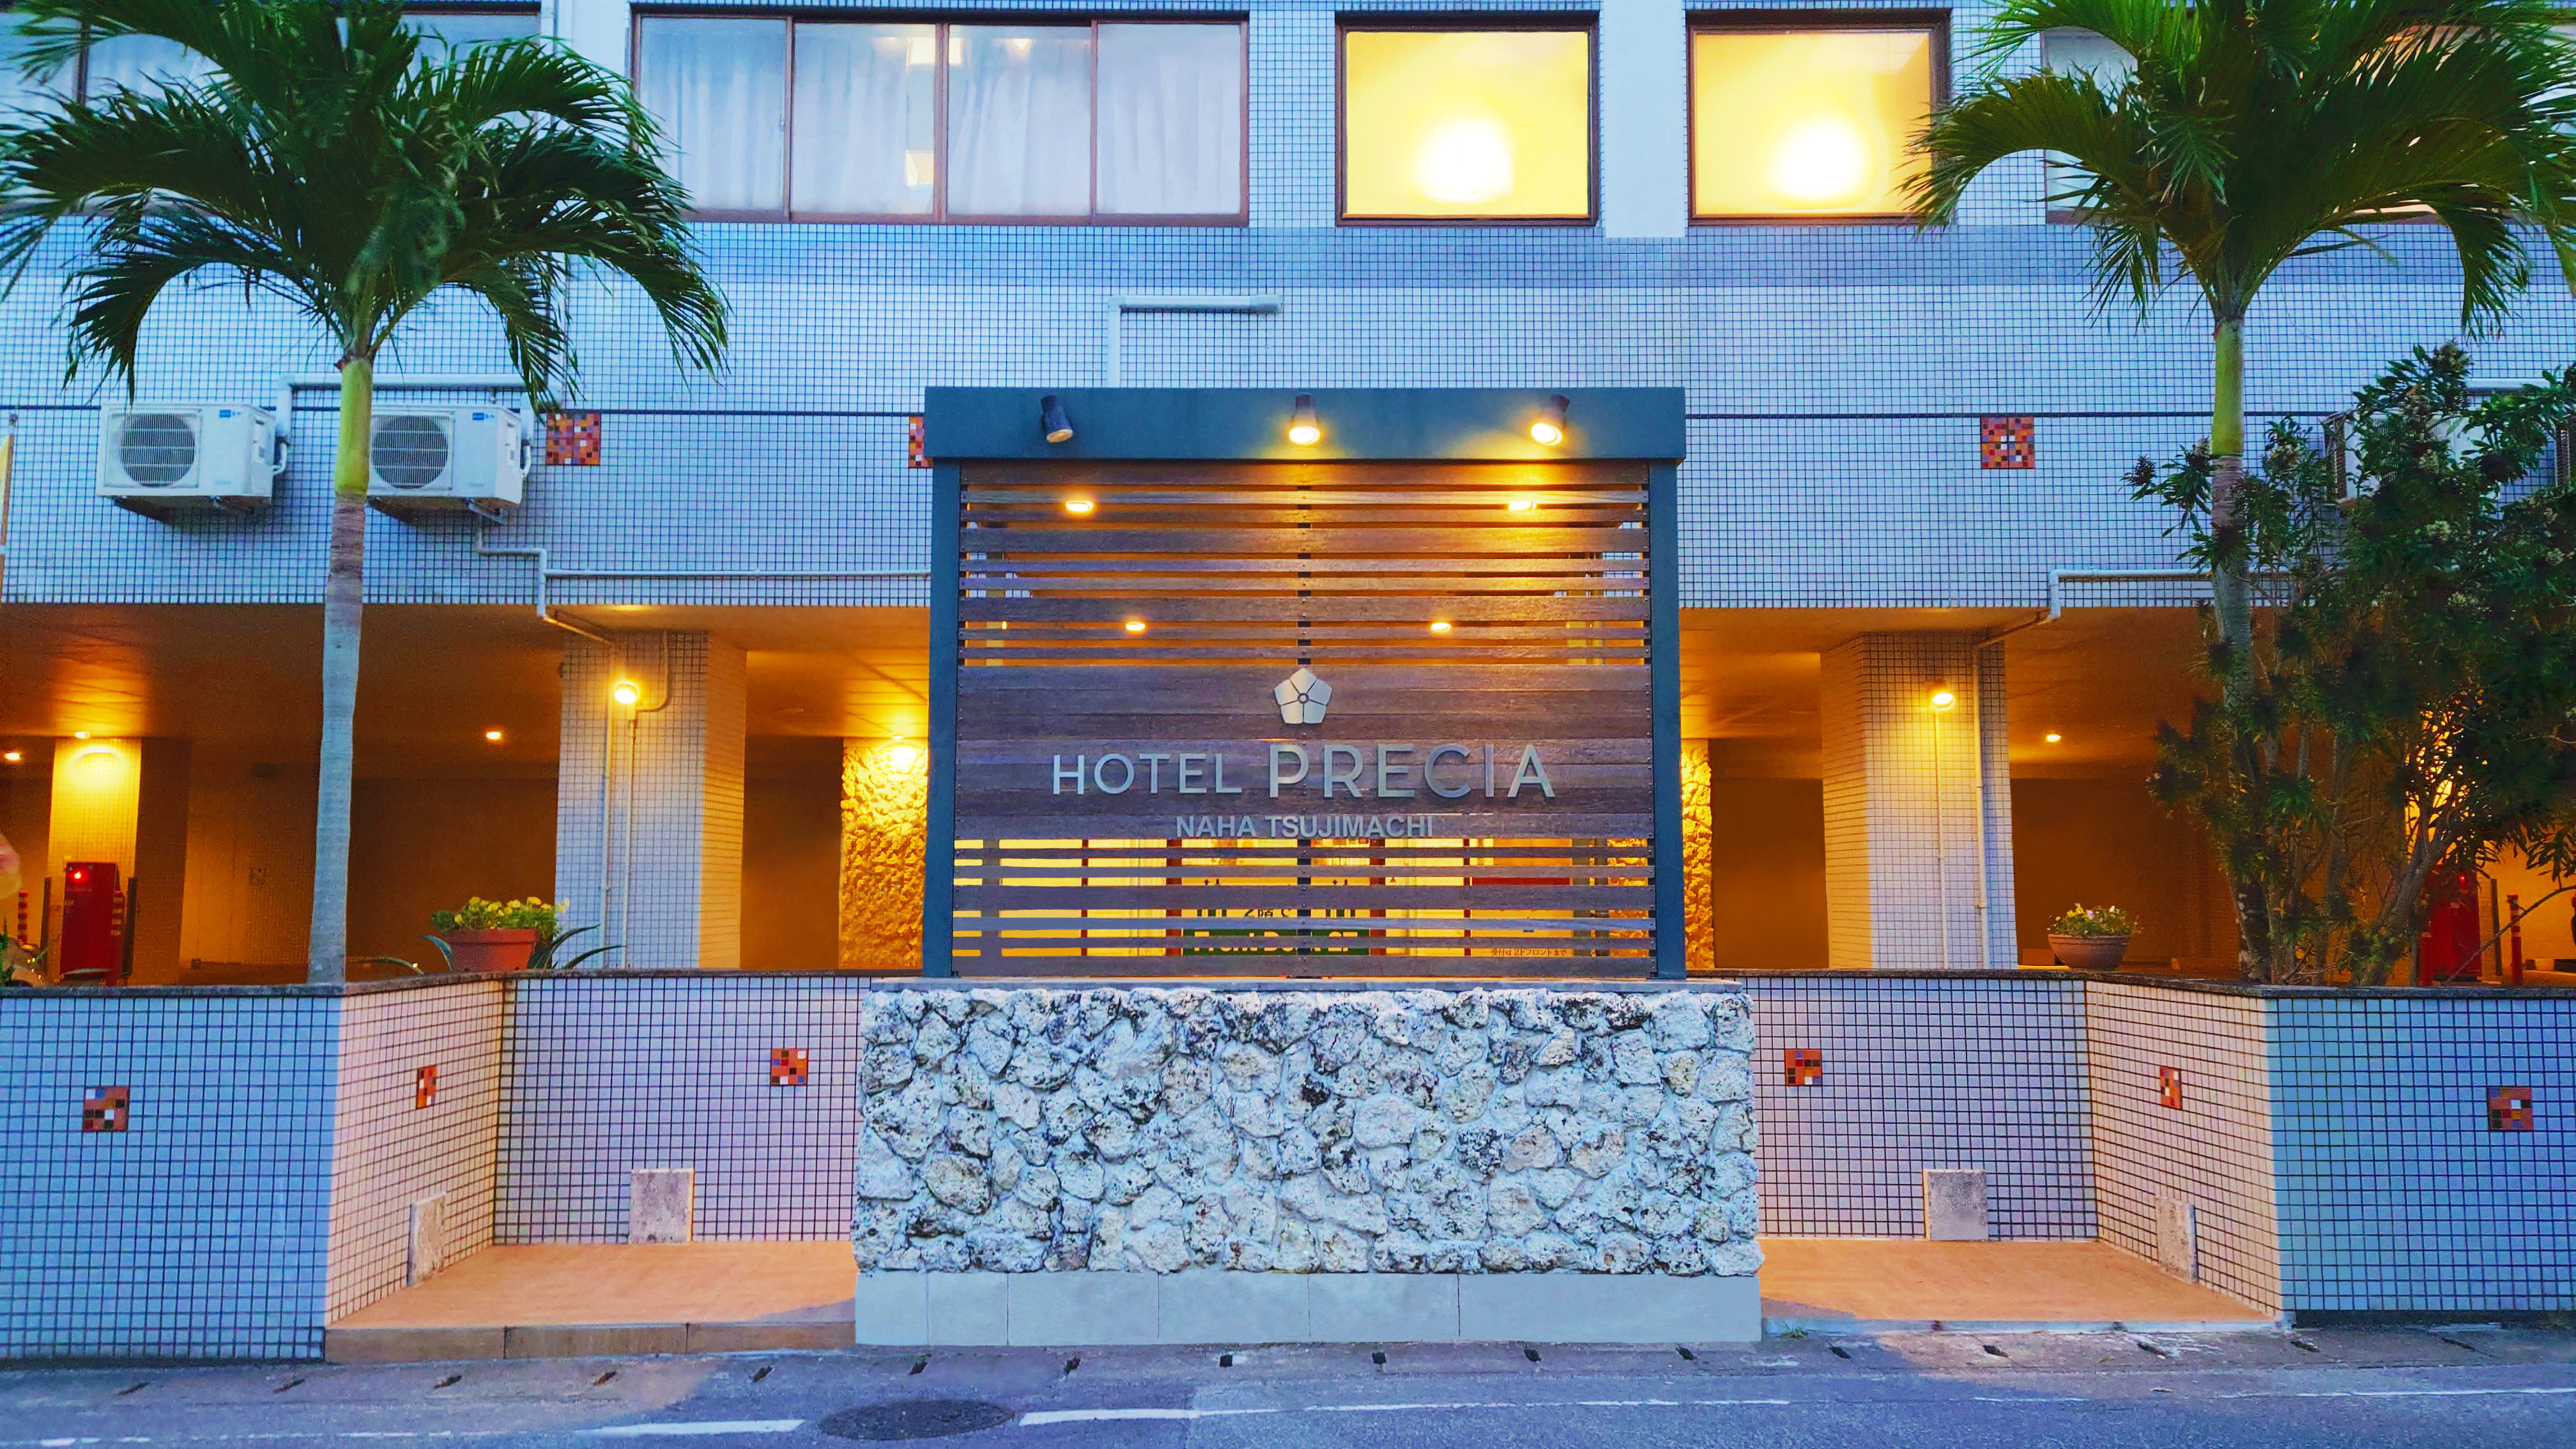 Okinawa Hotel Precia